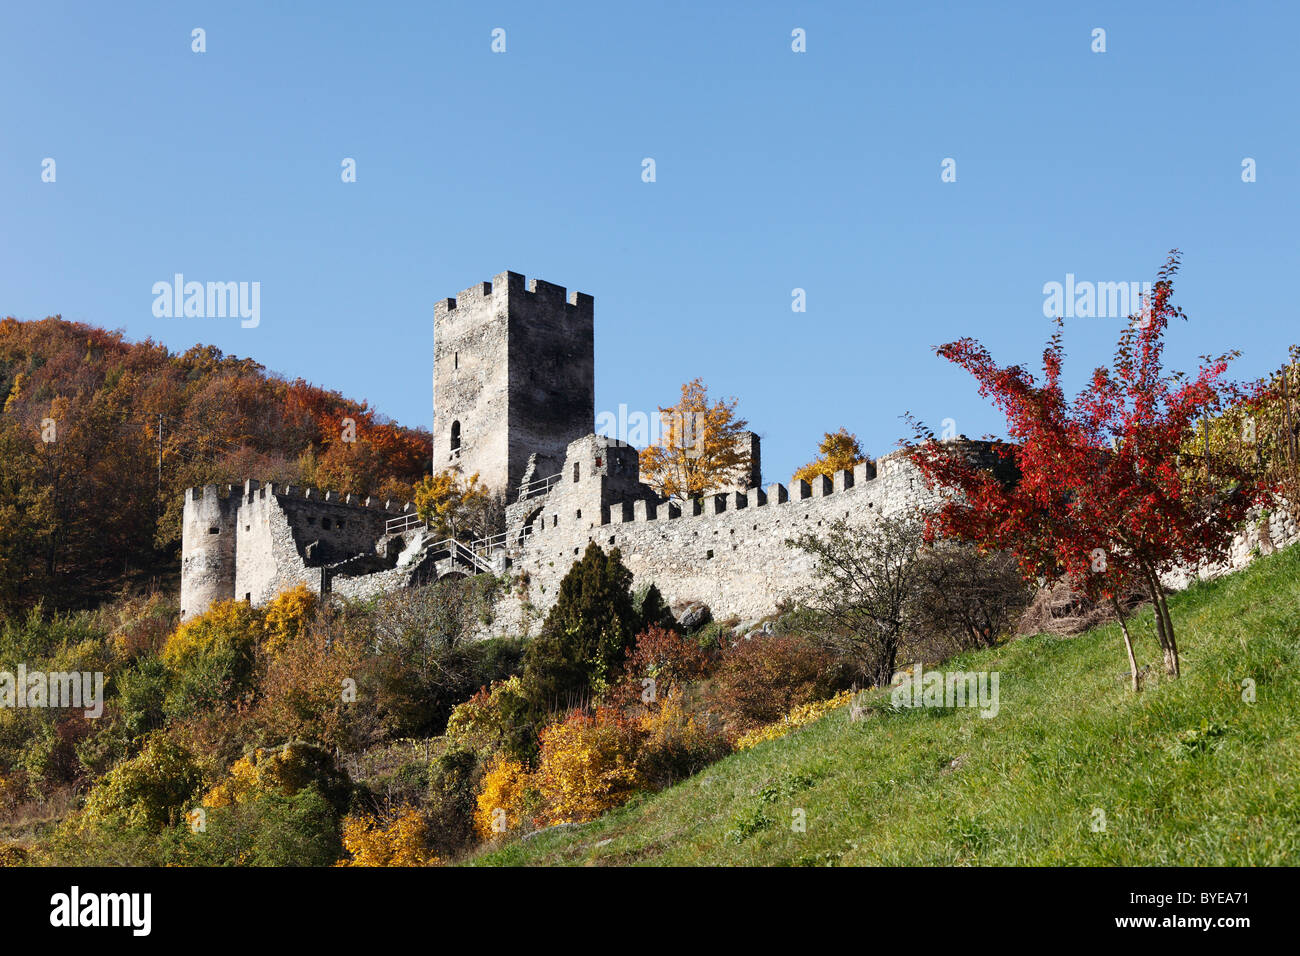 Hinterhaus castle ruin, Spitz, Wachau valley, Waldviertel region, Lower Austria, Austria, Europe Stock Photo